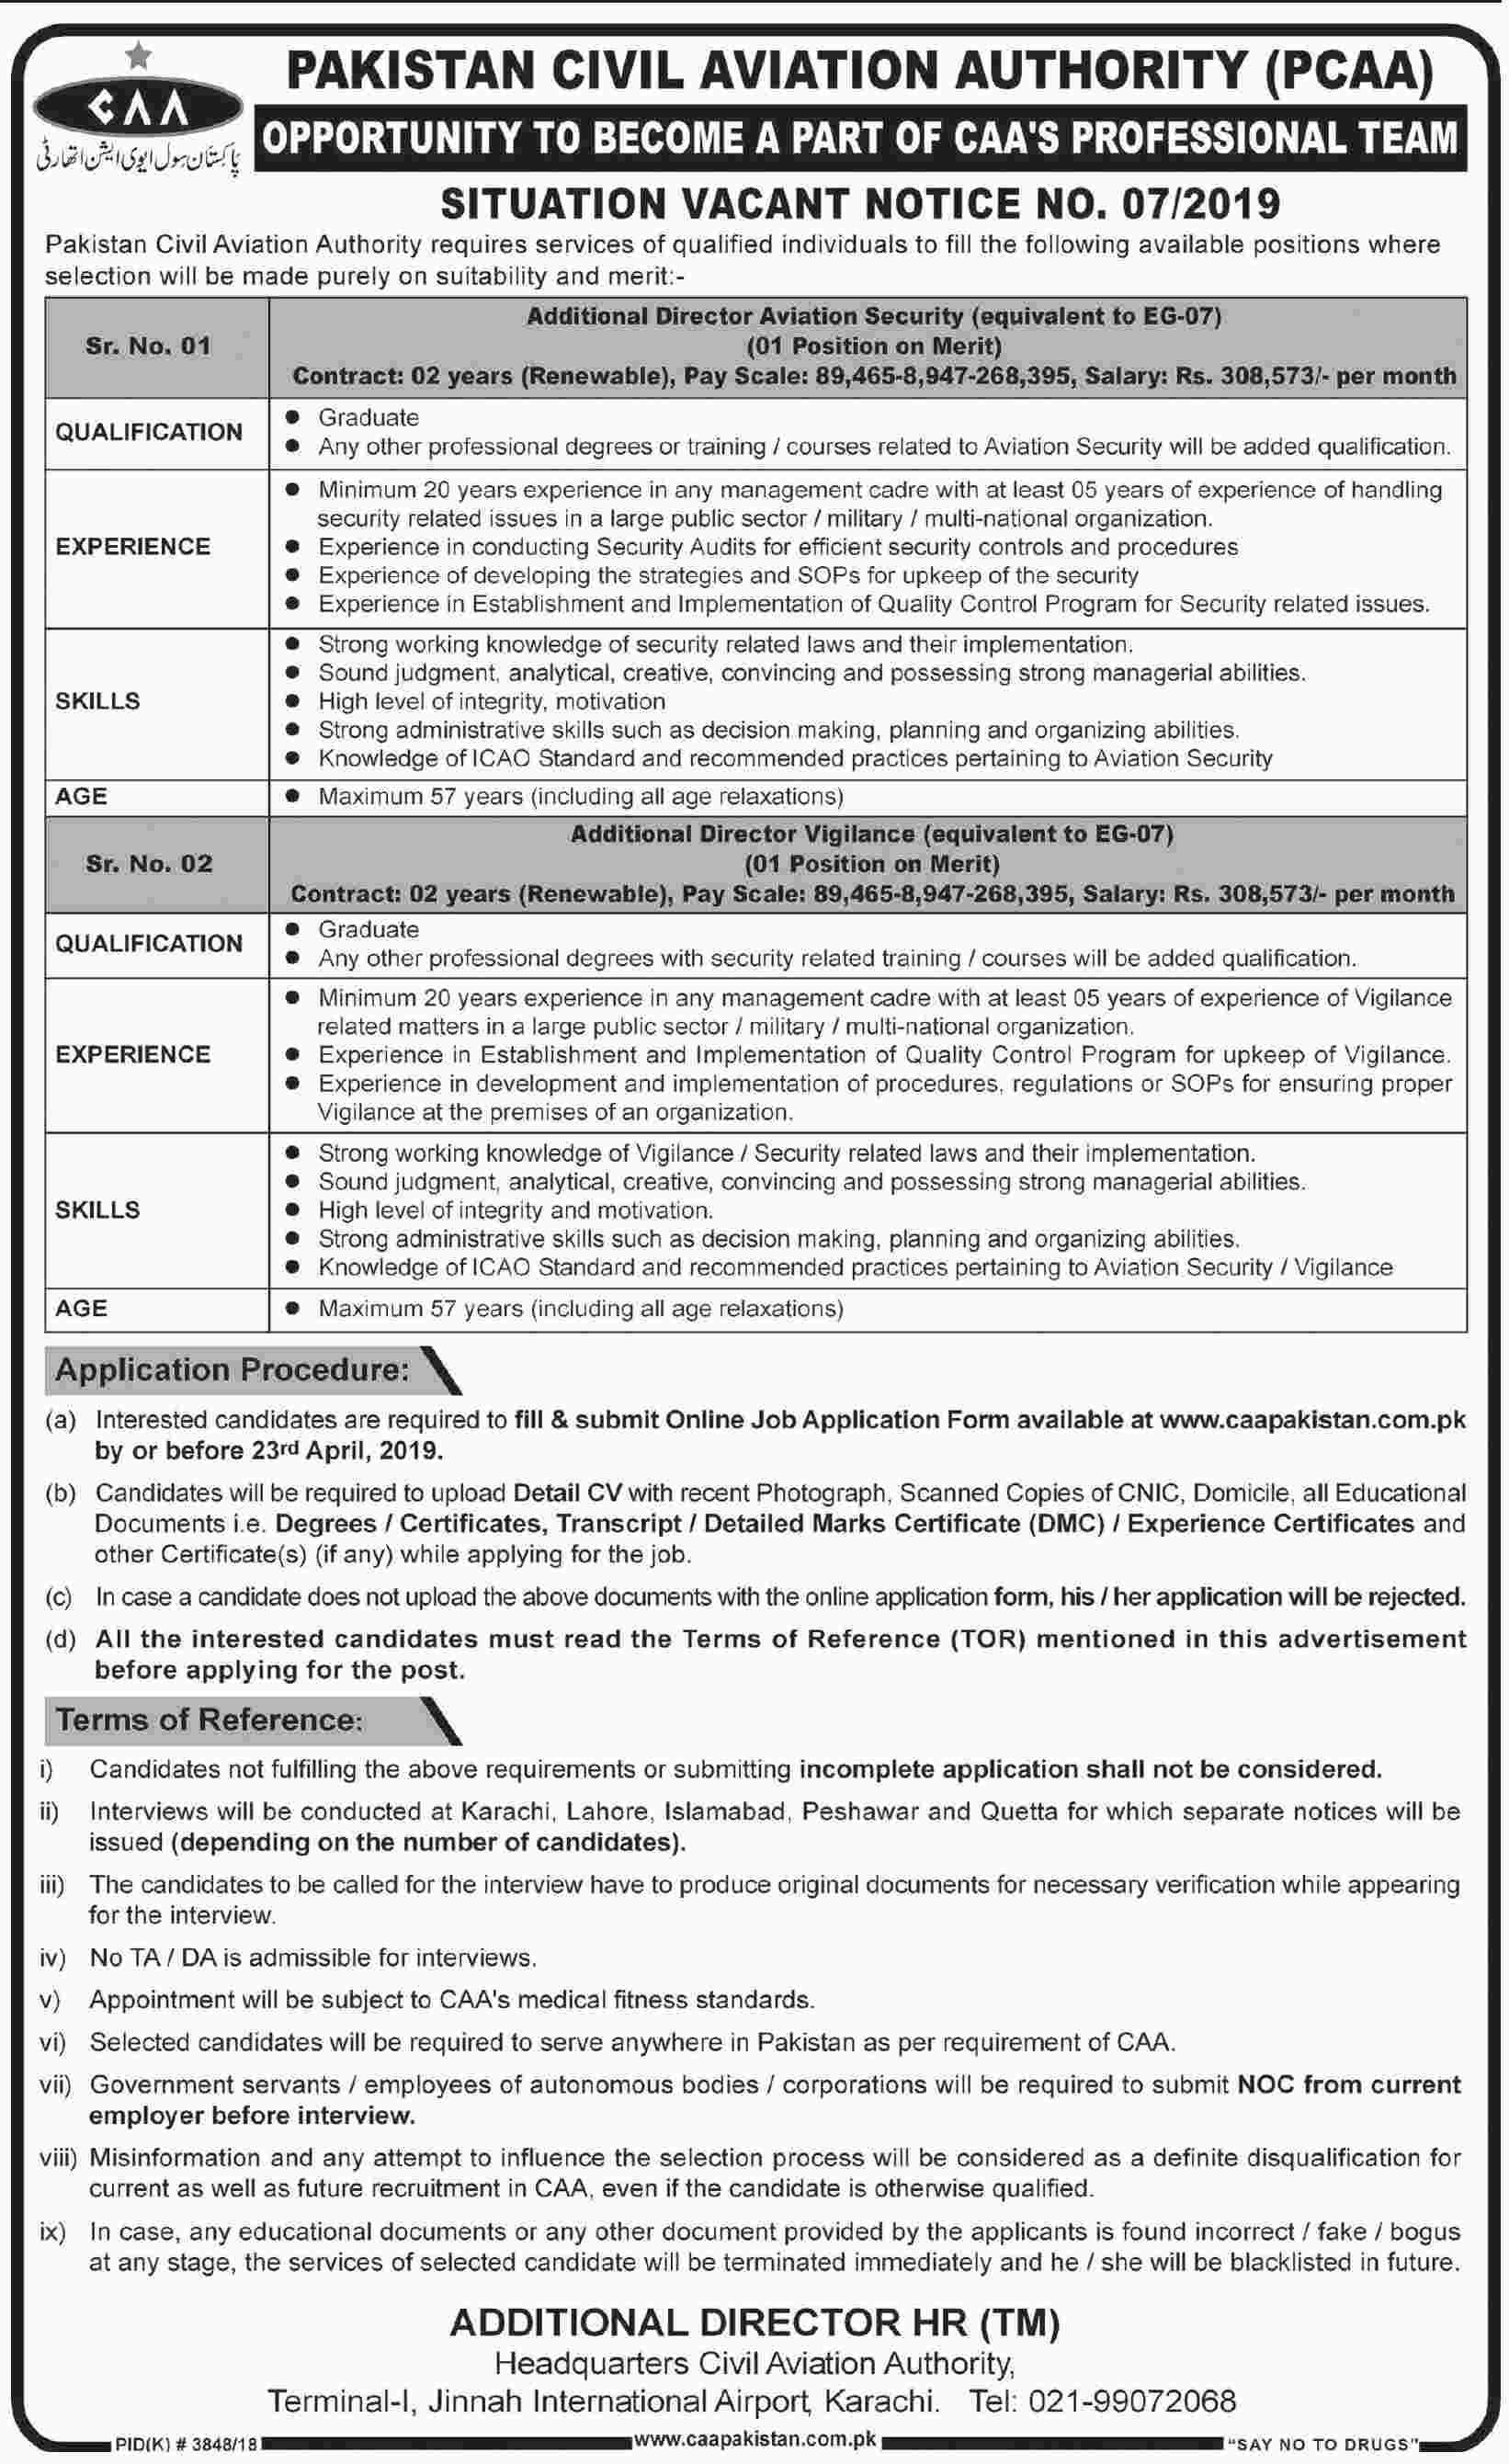 Pakistan Civil Aviation Authority CAA jobs 2019